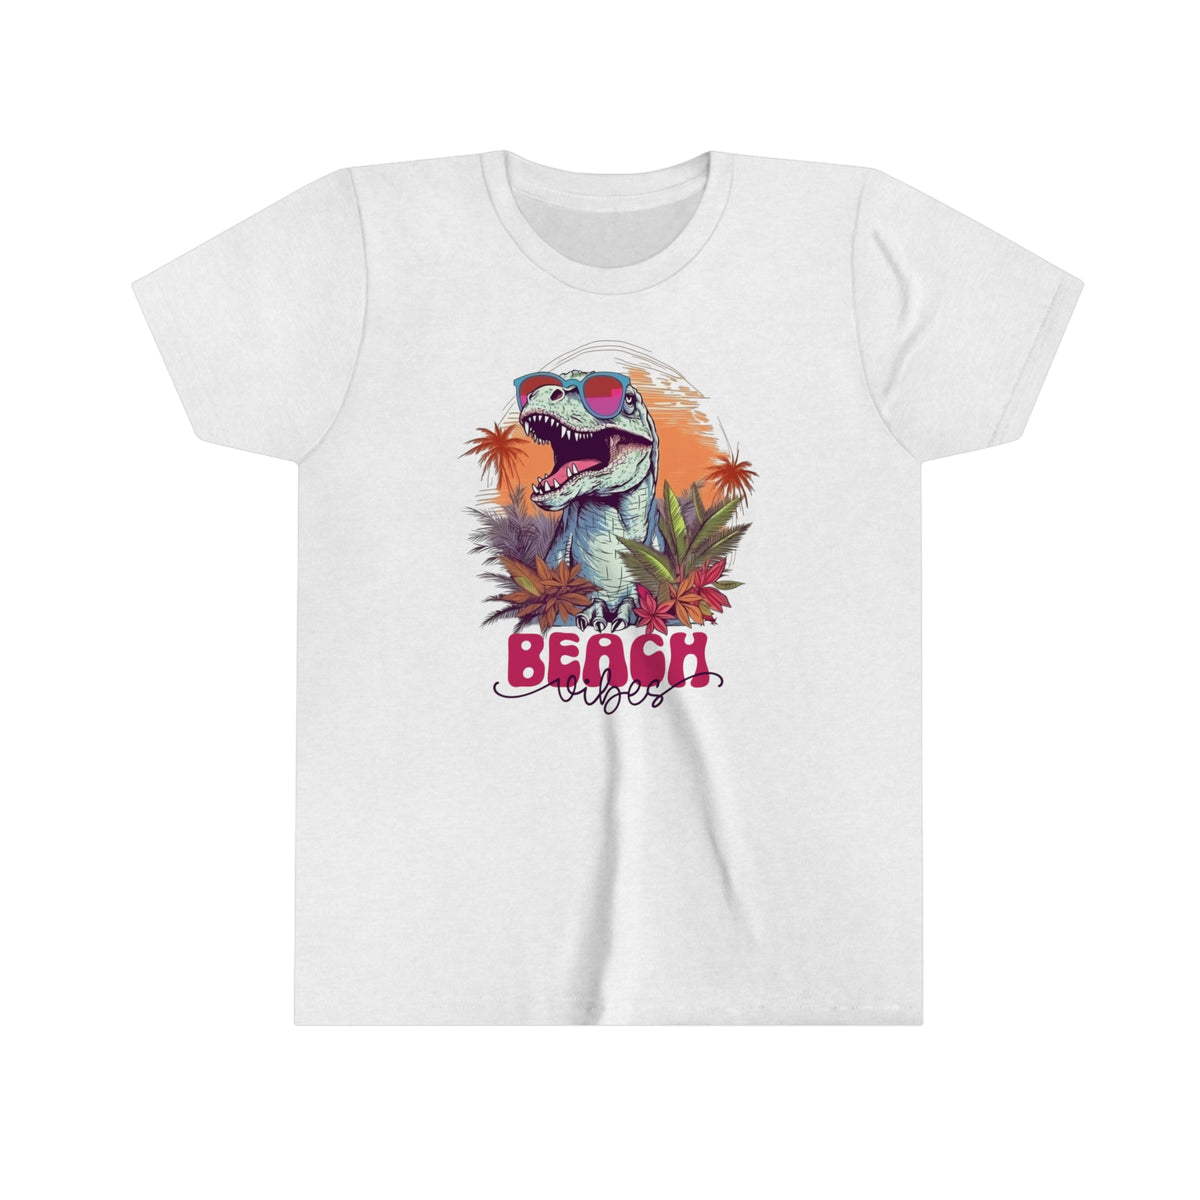 Beach Vibes T Rex Shirt | Funny Dinosaur Shirt | Beach Bum Shirt | Tropical Summer Shirt | Youth Jersey T-shirt